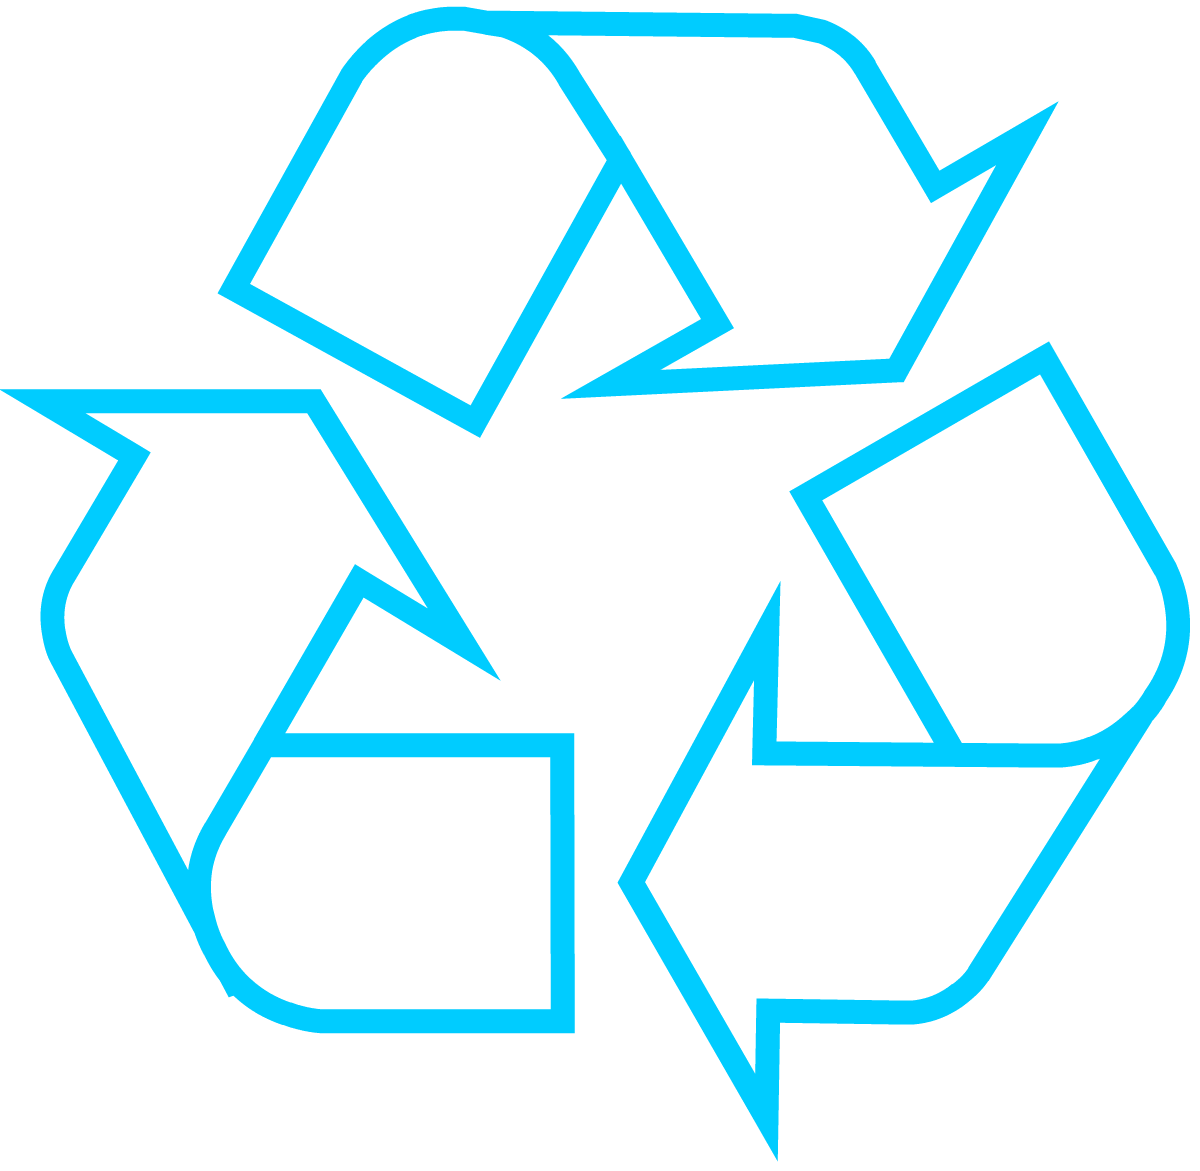 Blue and Light Blue Logo - Recycling Symbol the Original Recycle Logo